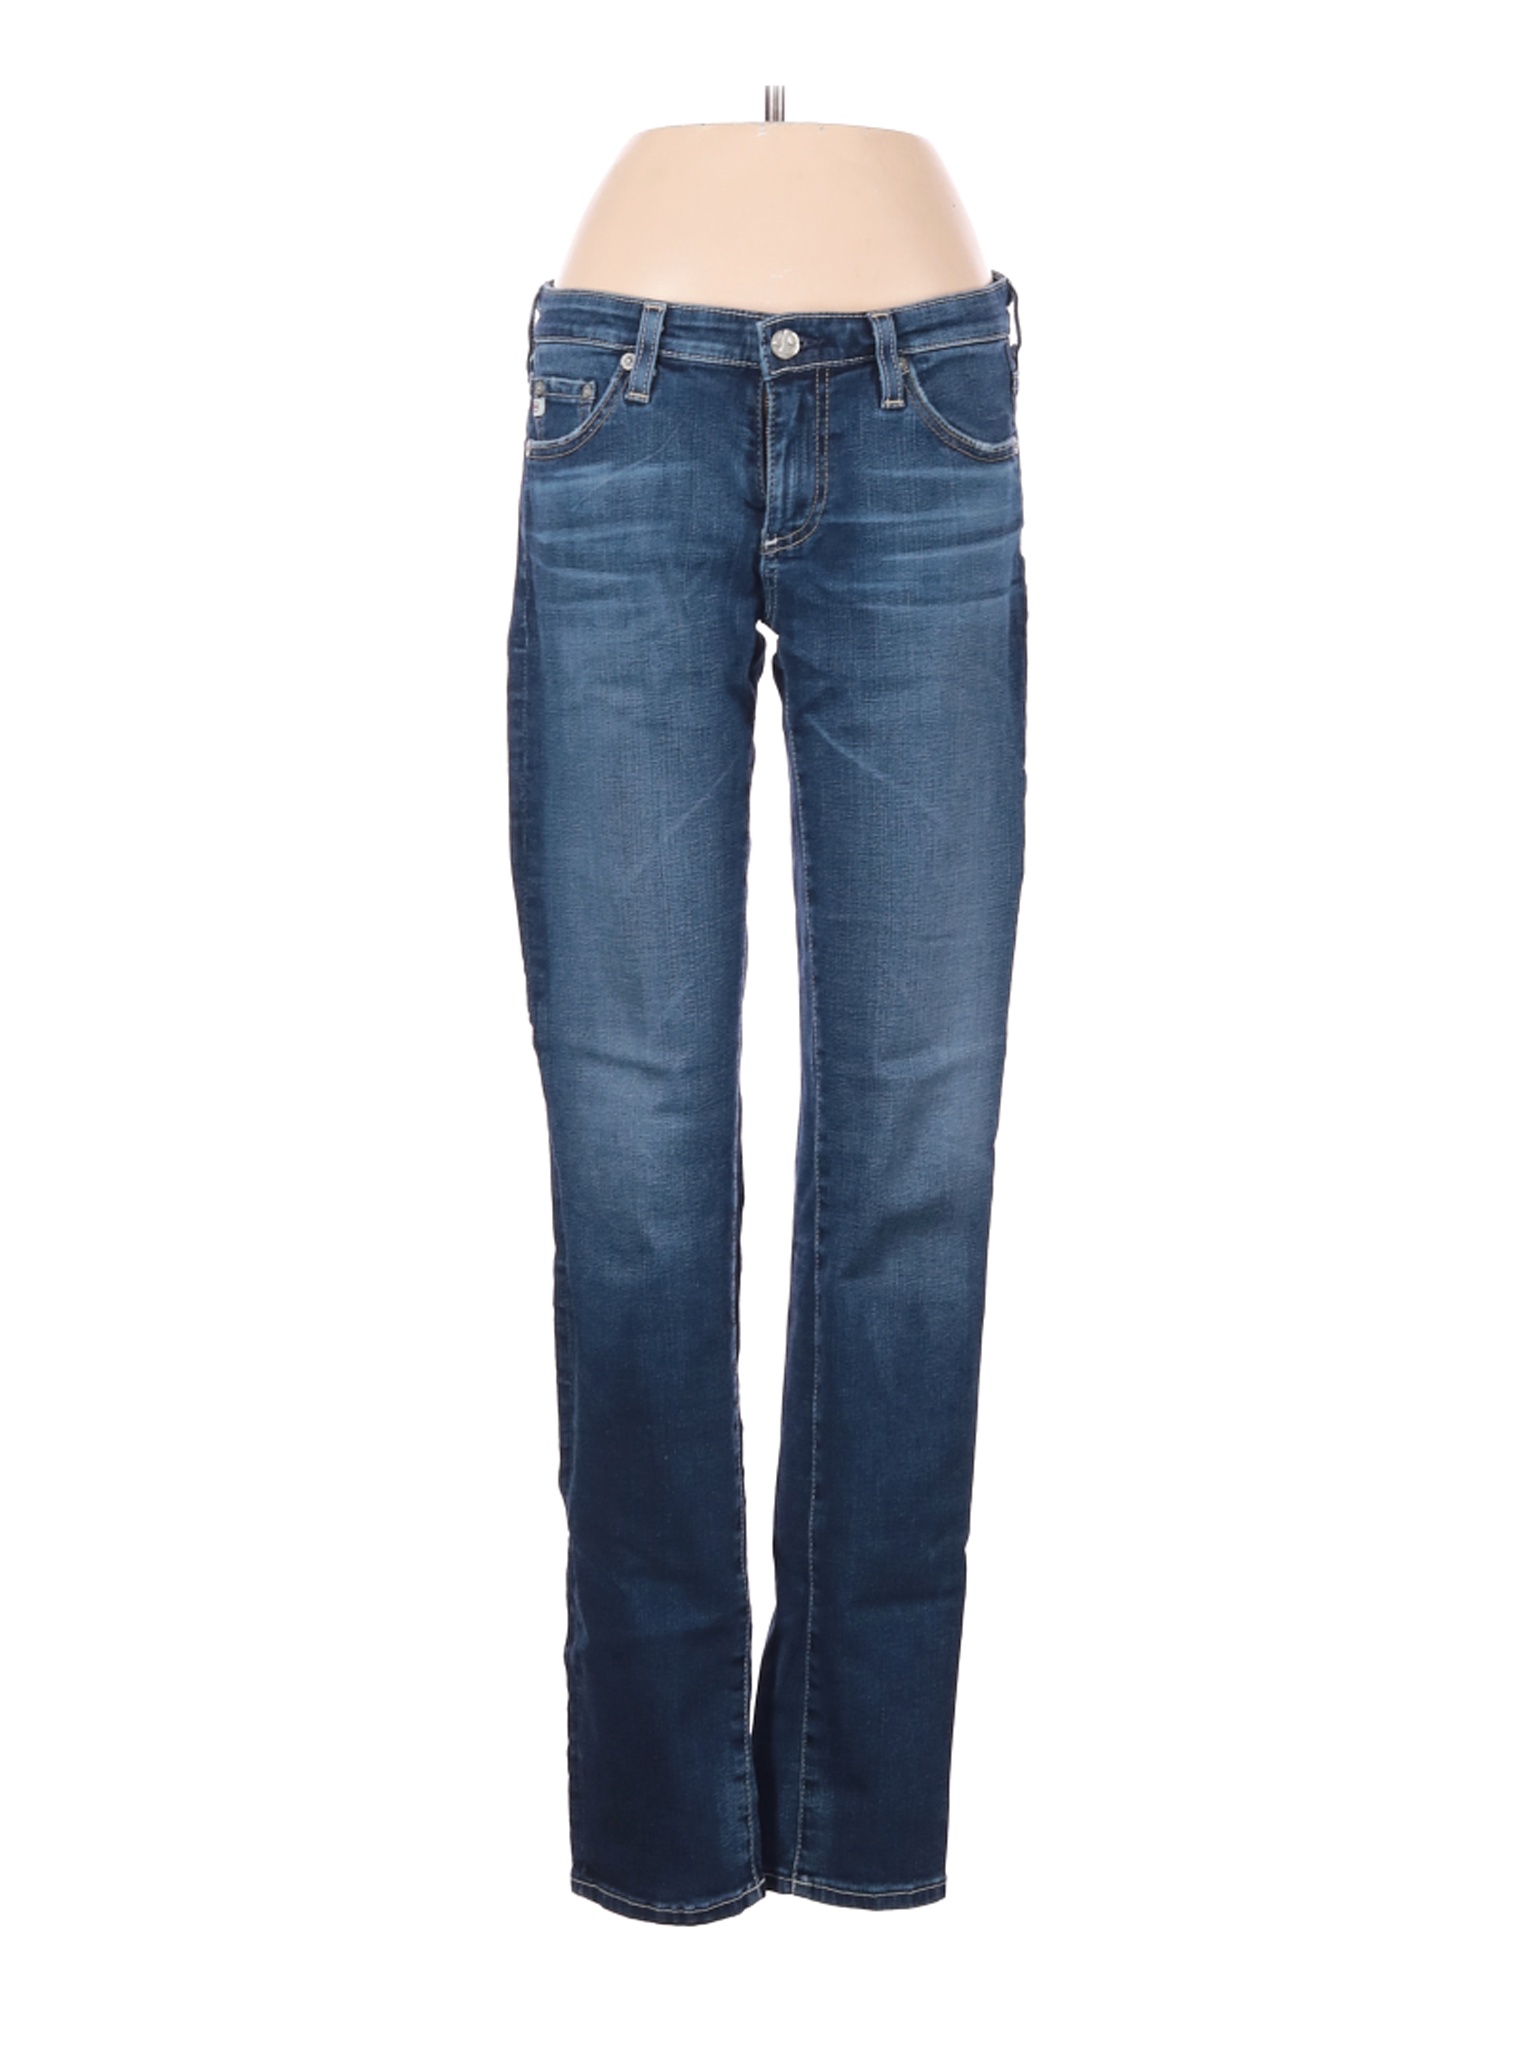 Adriano Goldschmied Women Blue Jeans 27W | eBay